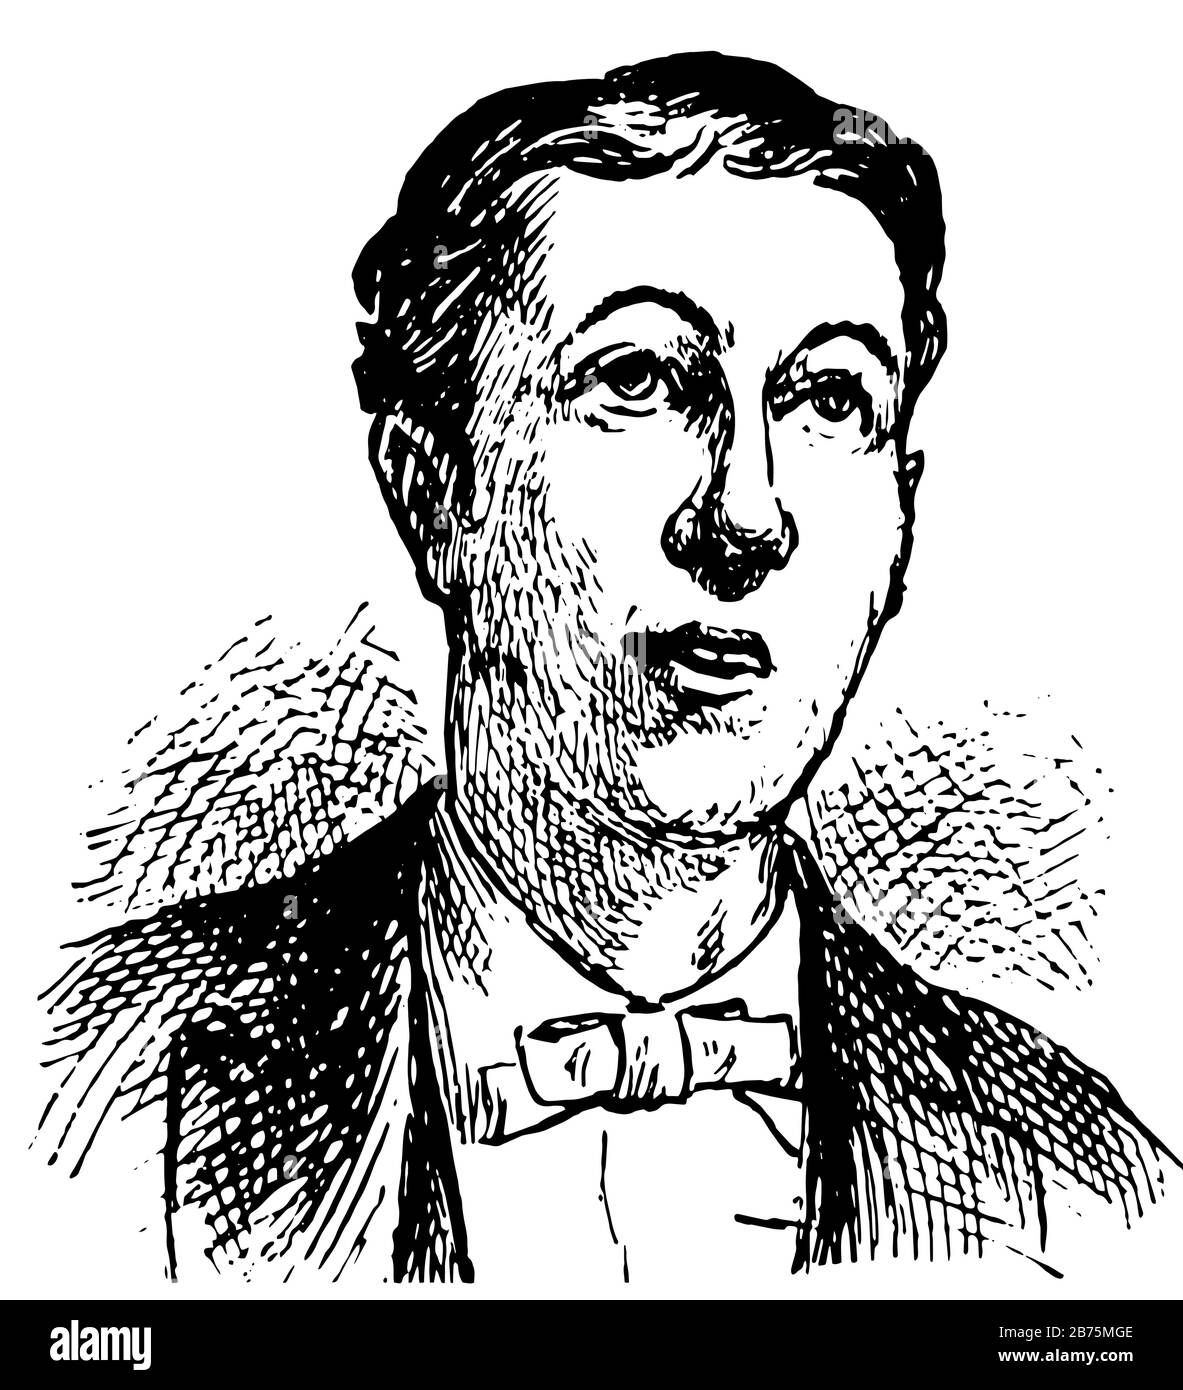 Uomo con cravatta ad arco che esprime speranza in questa immagine, disegno di linea vintage o illustrazione di incisione. Illustrazione Vettoriale